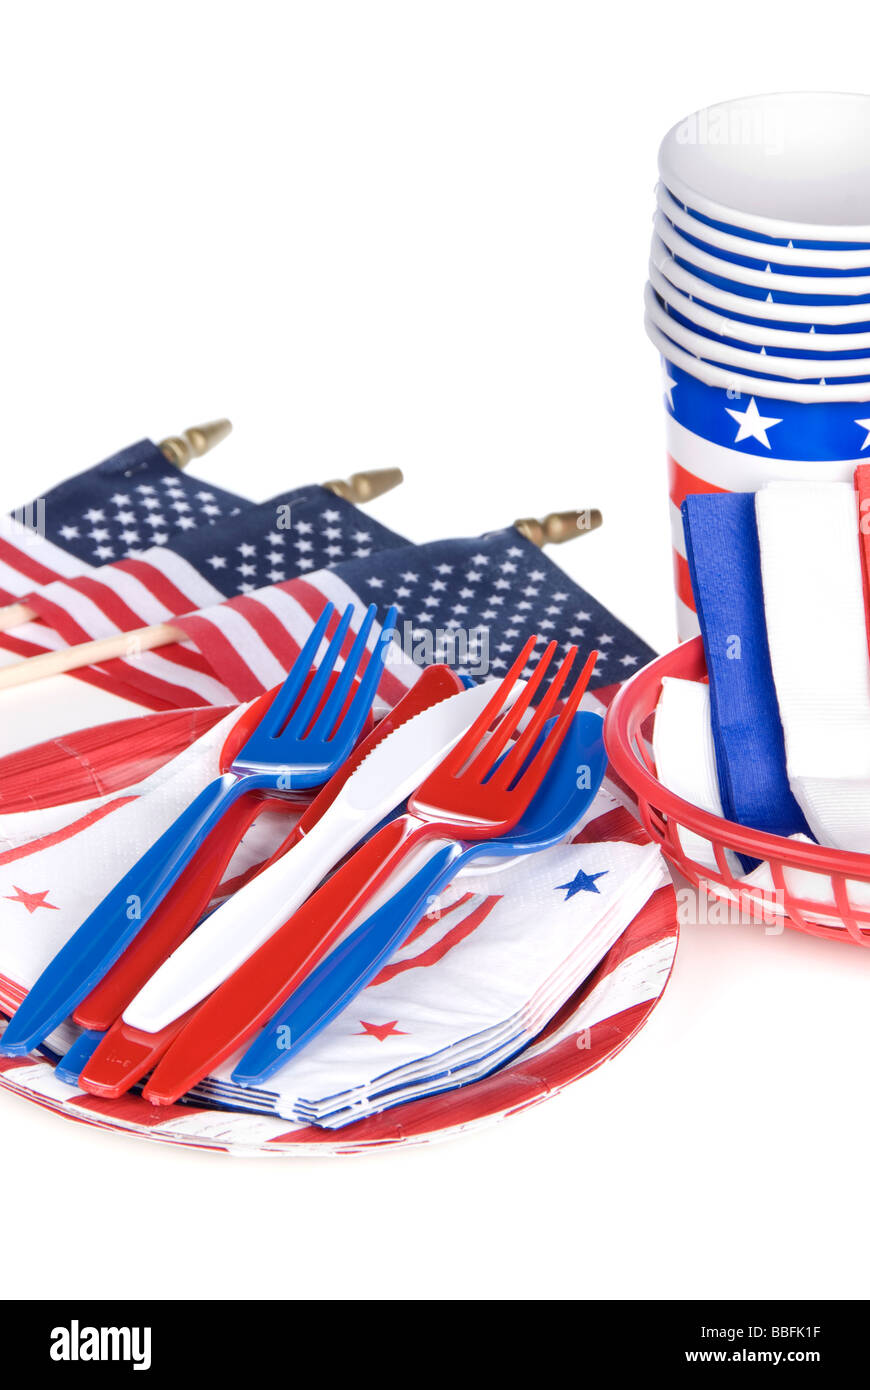 Julio cuarto utensilios patriótico incluyendo horquillas de plástico cuchillos cucharas servilletas platos y vasos sobre un fondo blanco. Foto de stock